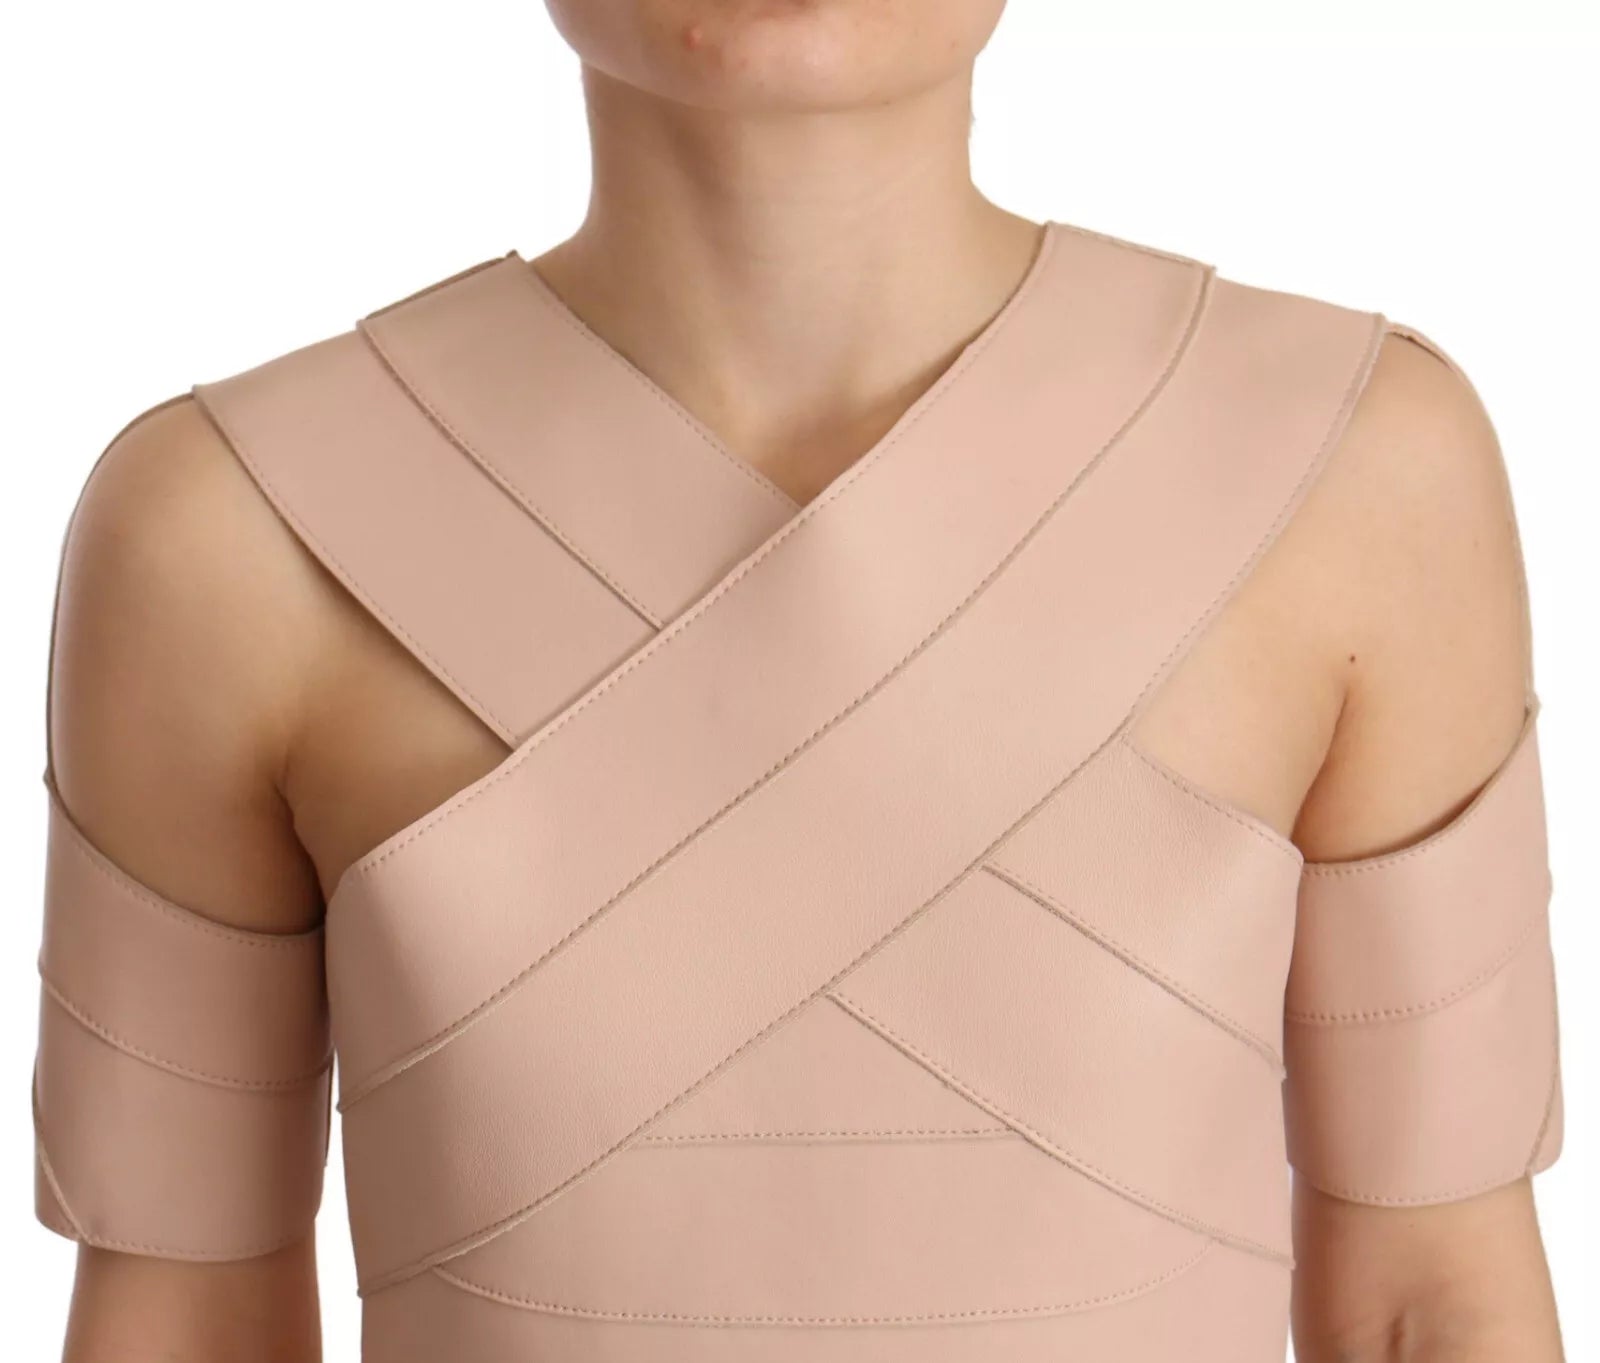 Beige Leather Open Shoulder Sheath Mini Dress